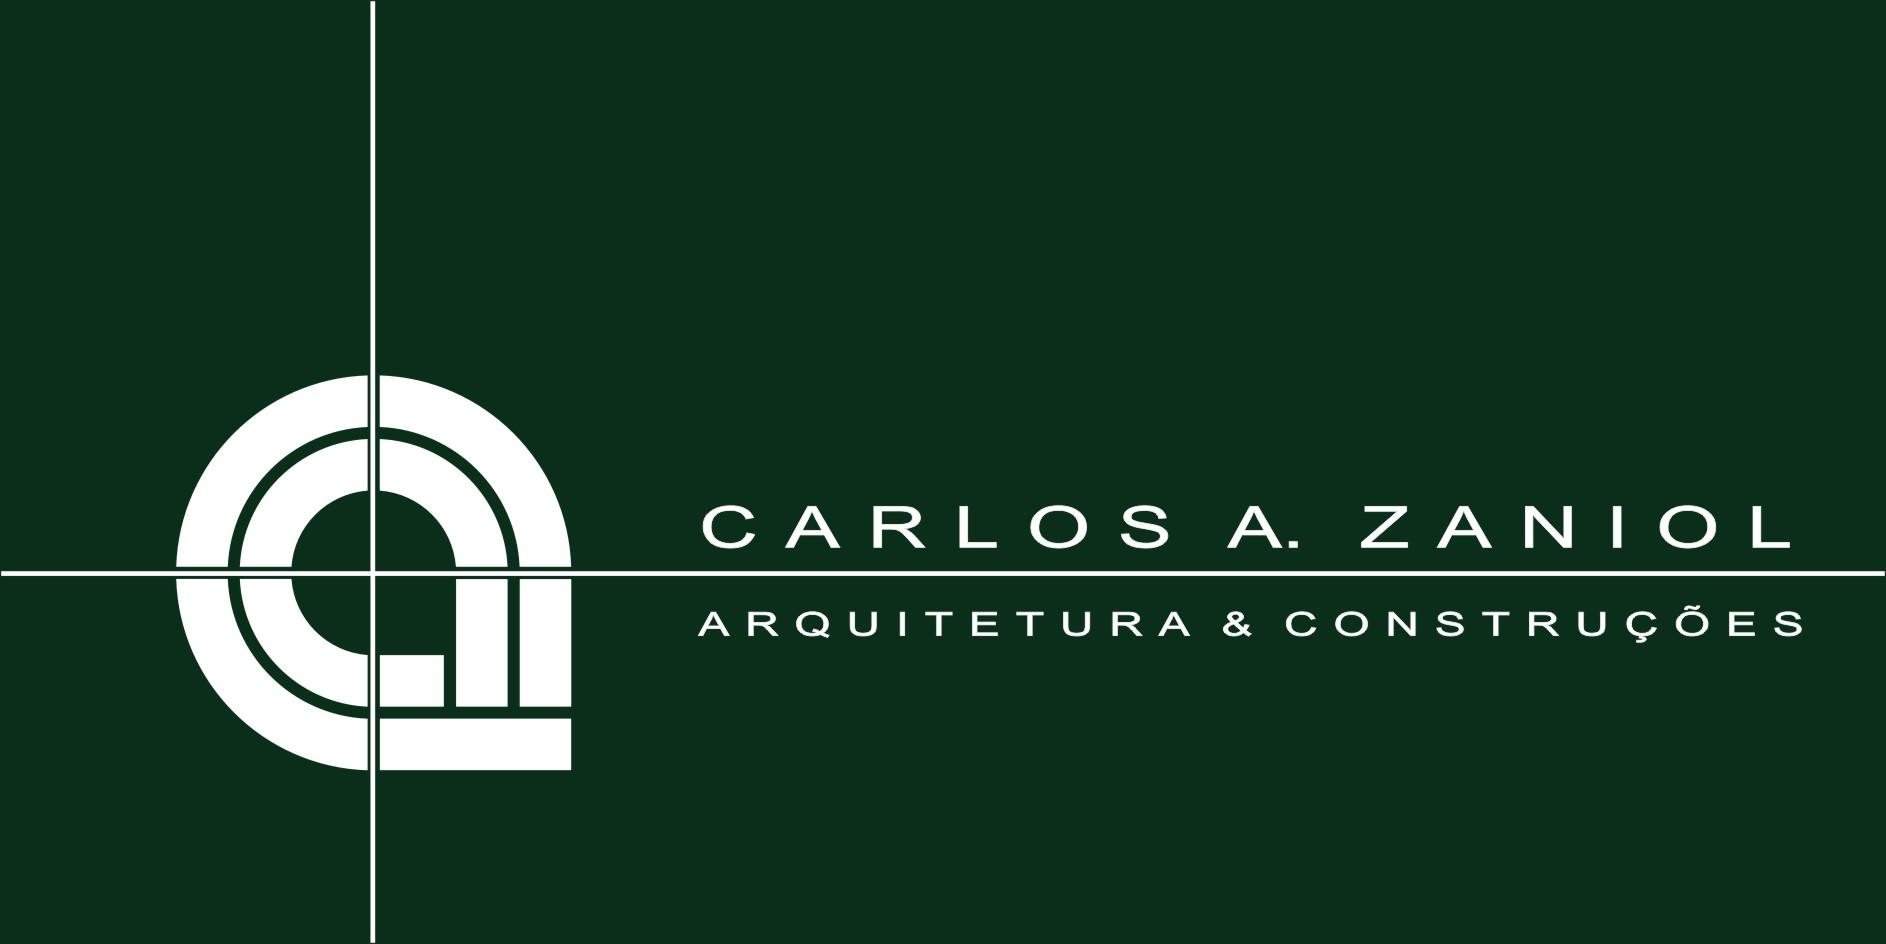 Carlos A. Zaniol Arquitetura e Construções